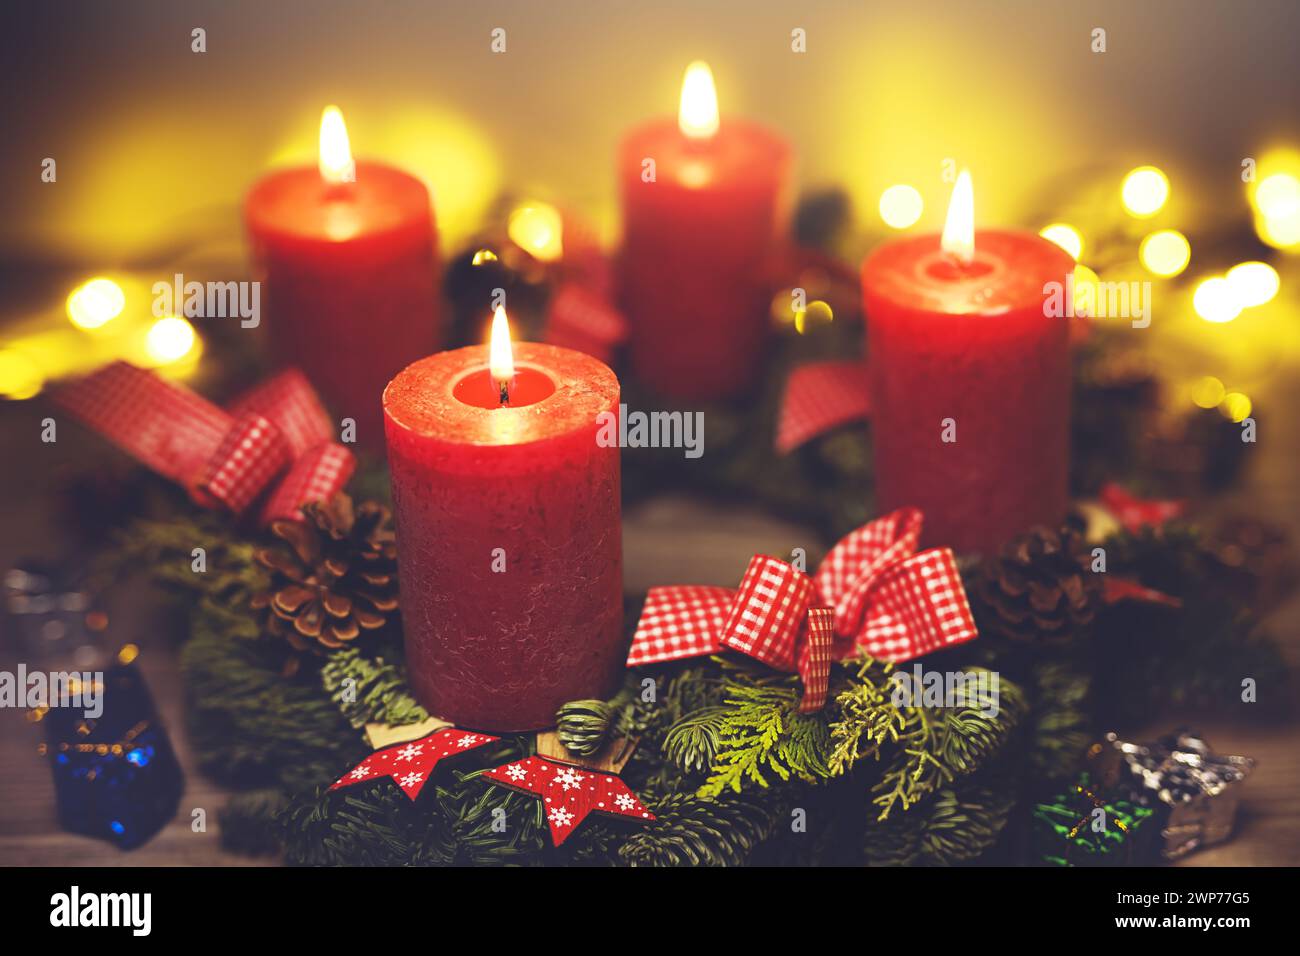 Adventskranz mit vier brennenden Kerzen Foto Stock